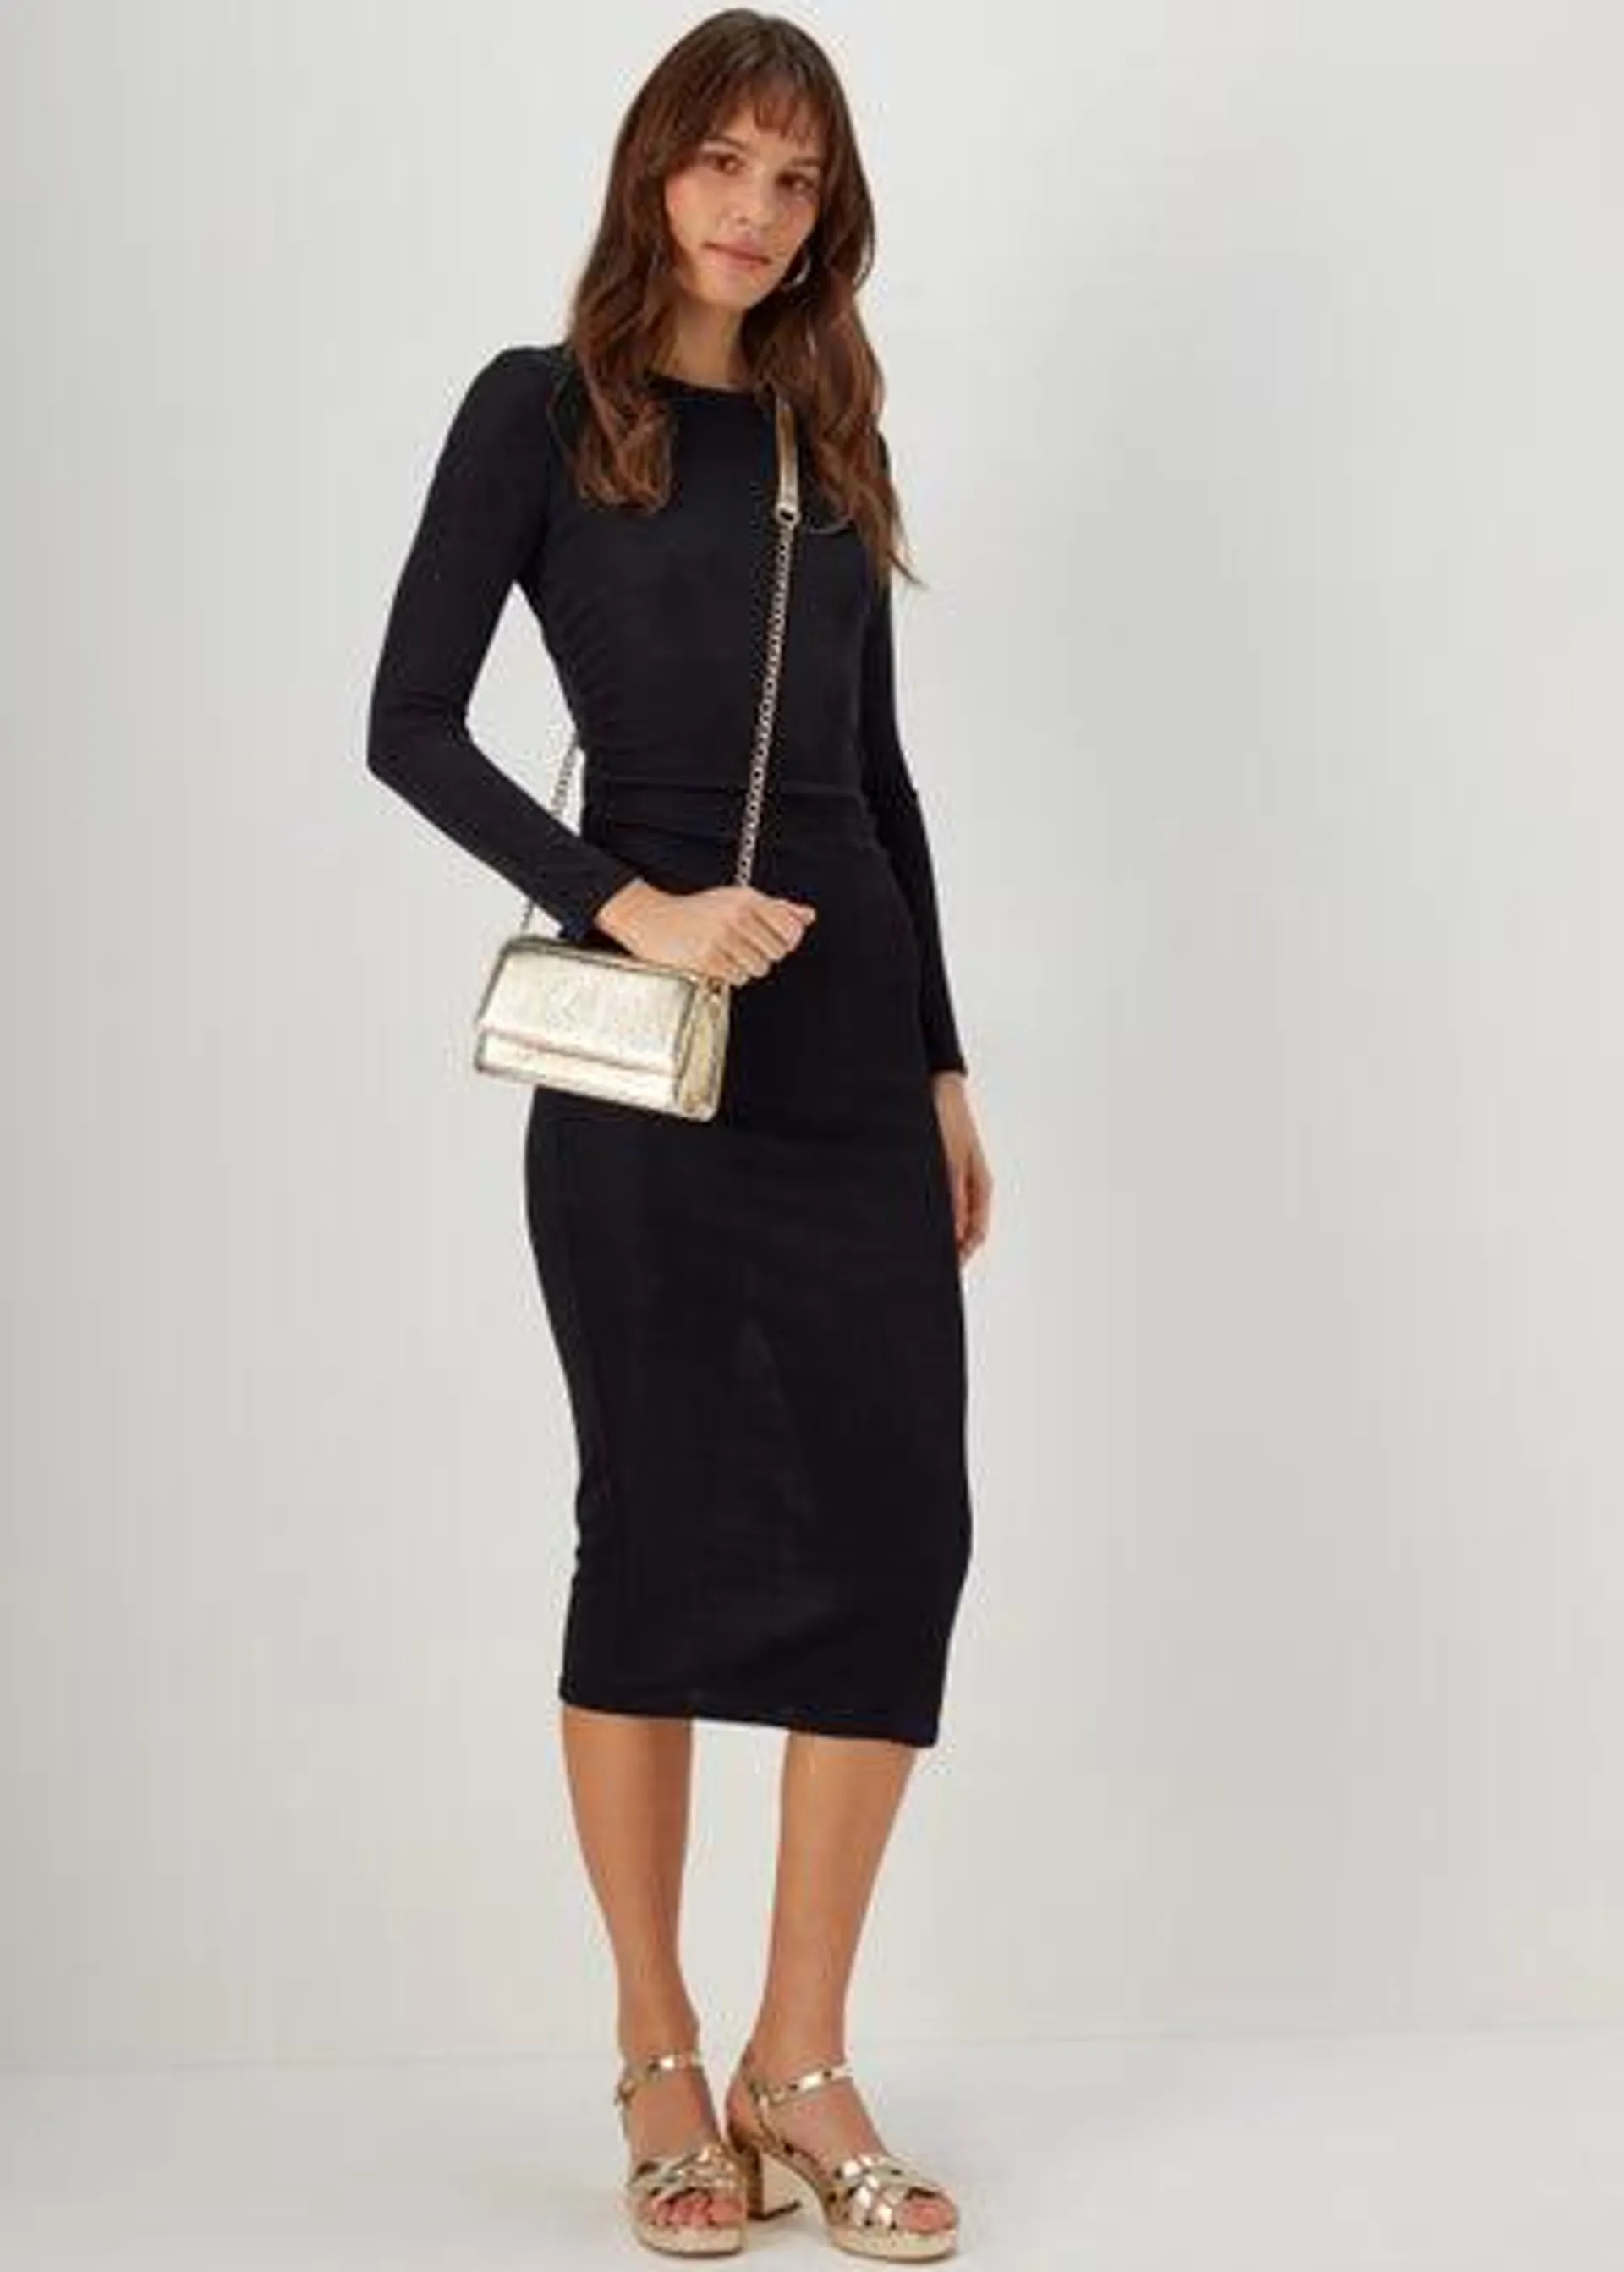 Black Ruched Side Dress - Size 16